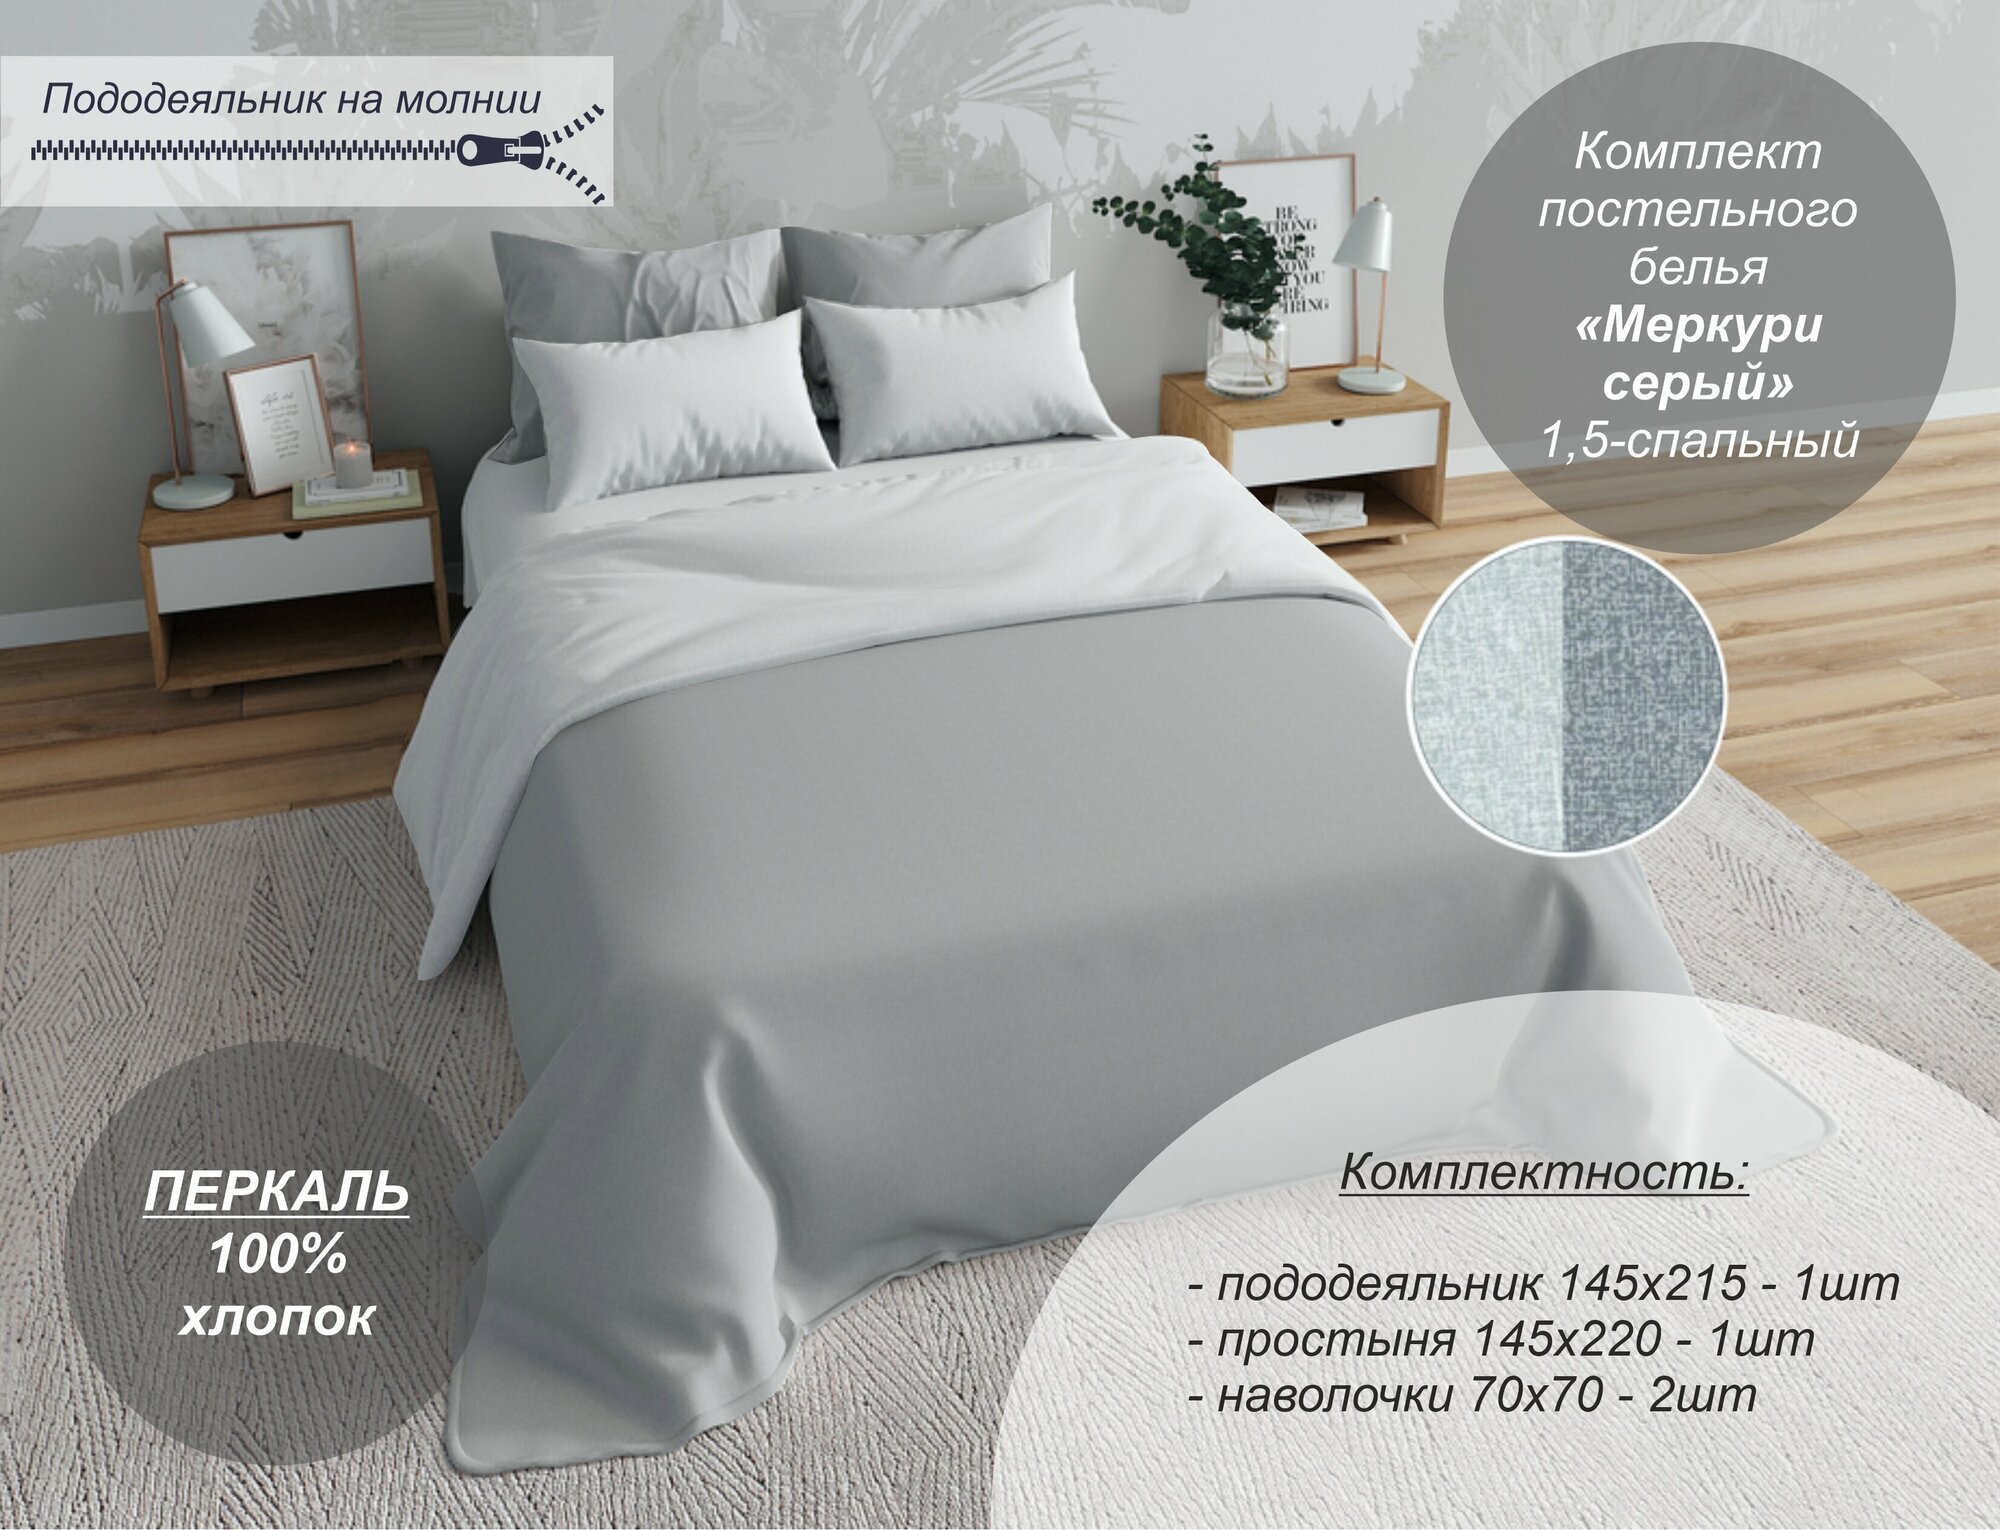 Комплект постельного белья Текстильный Dом, "Меркури серый" 1,5 спальный (Перкаль, наволочки 70х70)